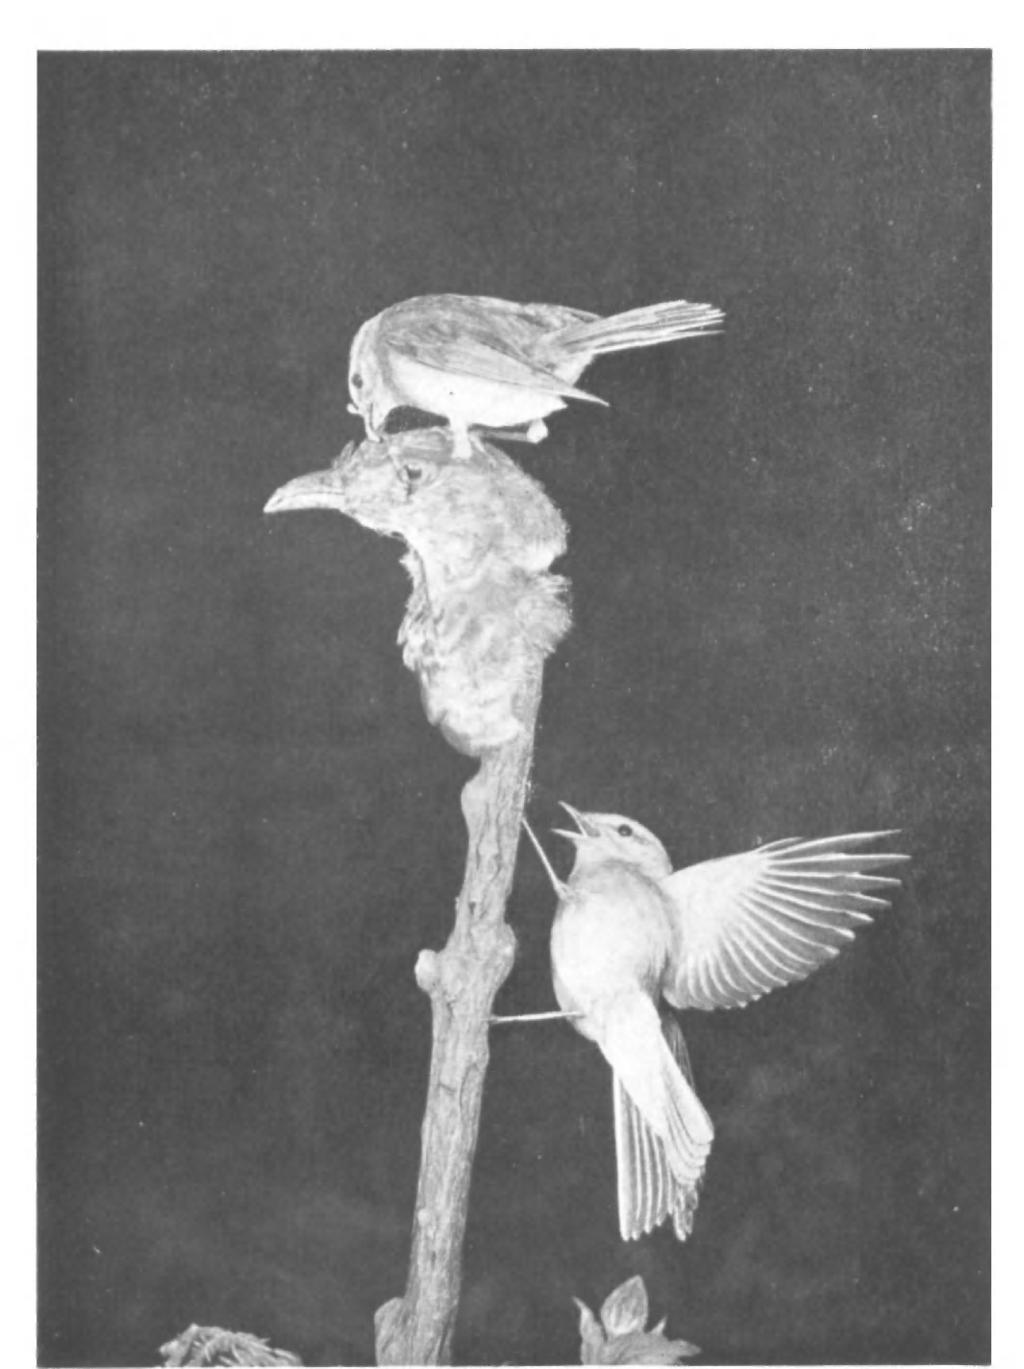 British Birds, Vol. xliii, PI. 29. Fig. 6. EXPERIMENTS WITH DUMMY CUCKOOS.